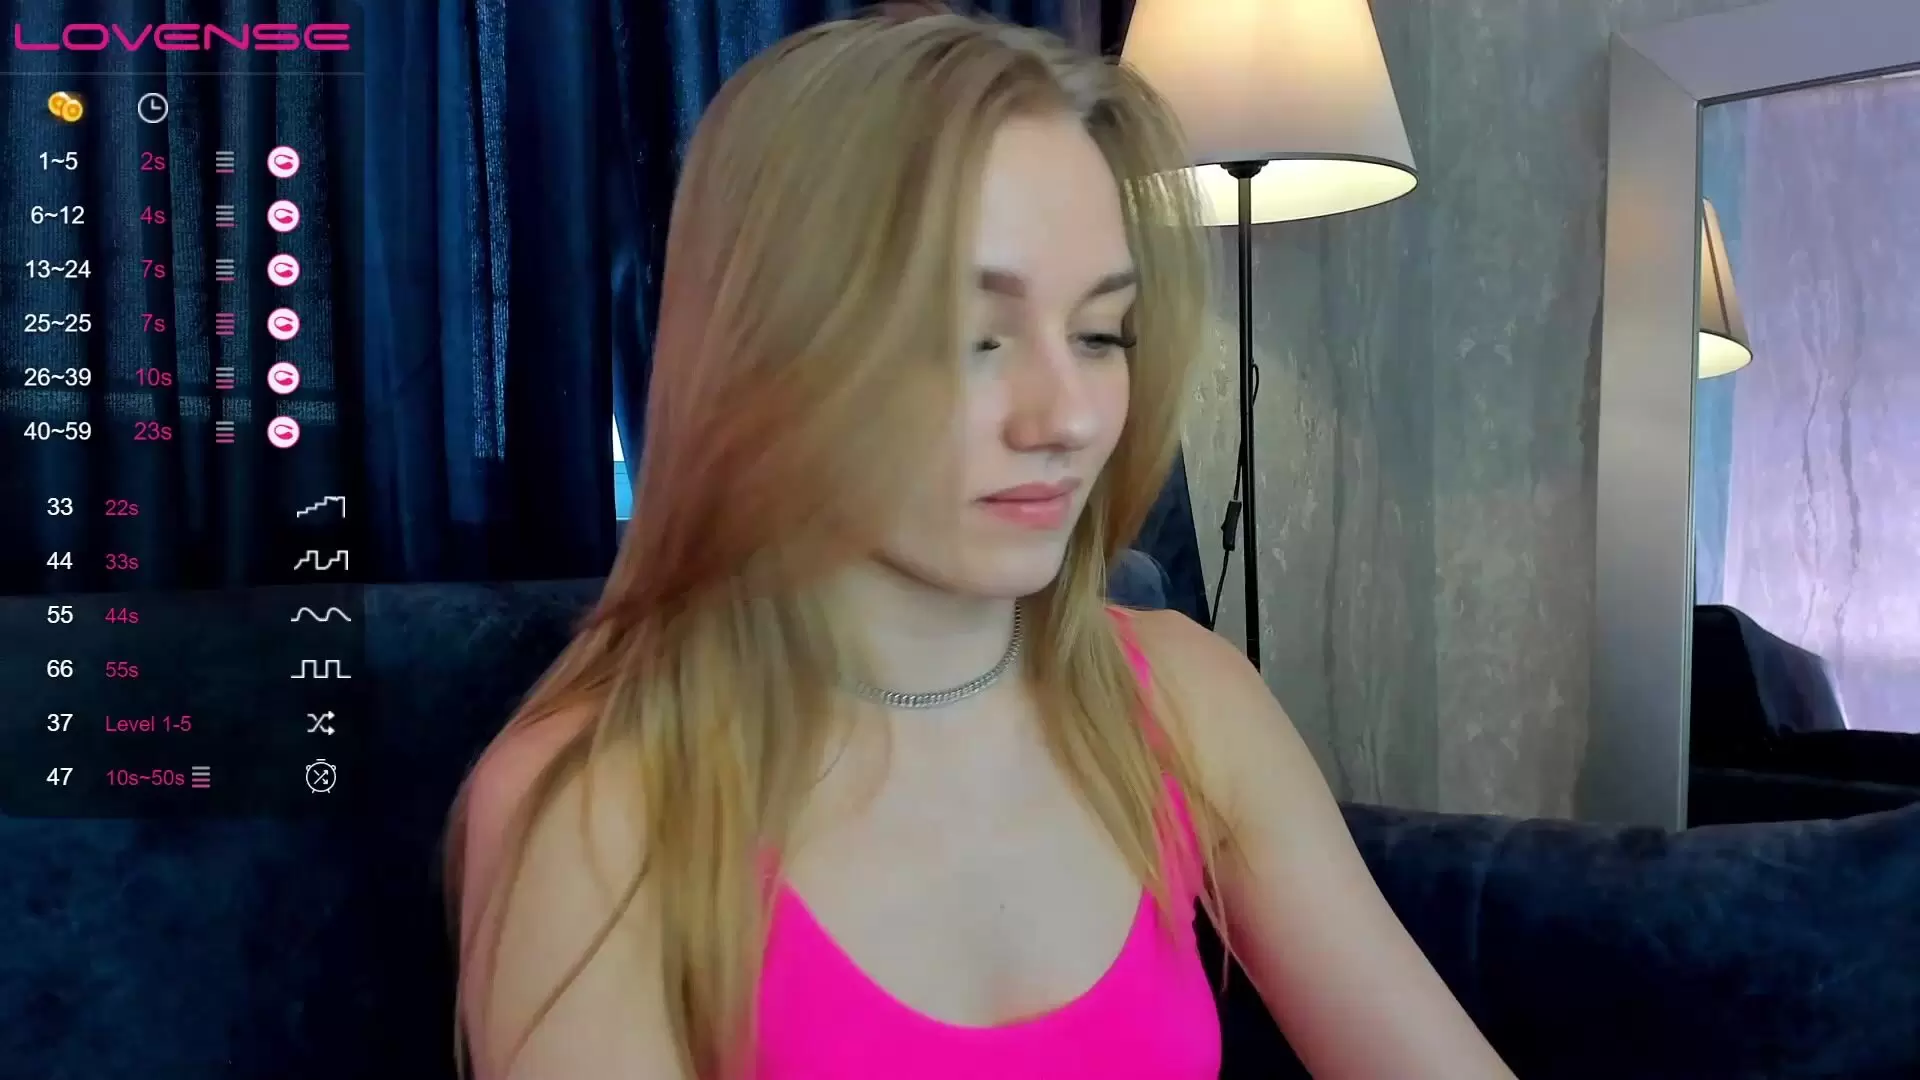 Barbie_lis - Video [Chaturbate] biceps porn-game hugedick bigeyes